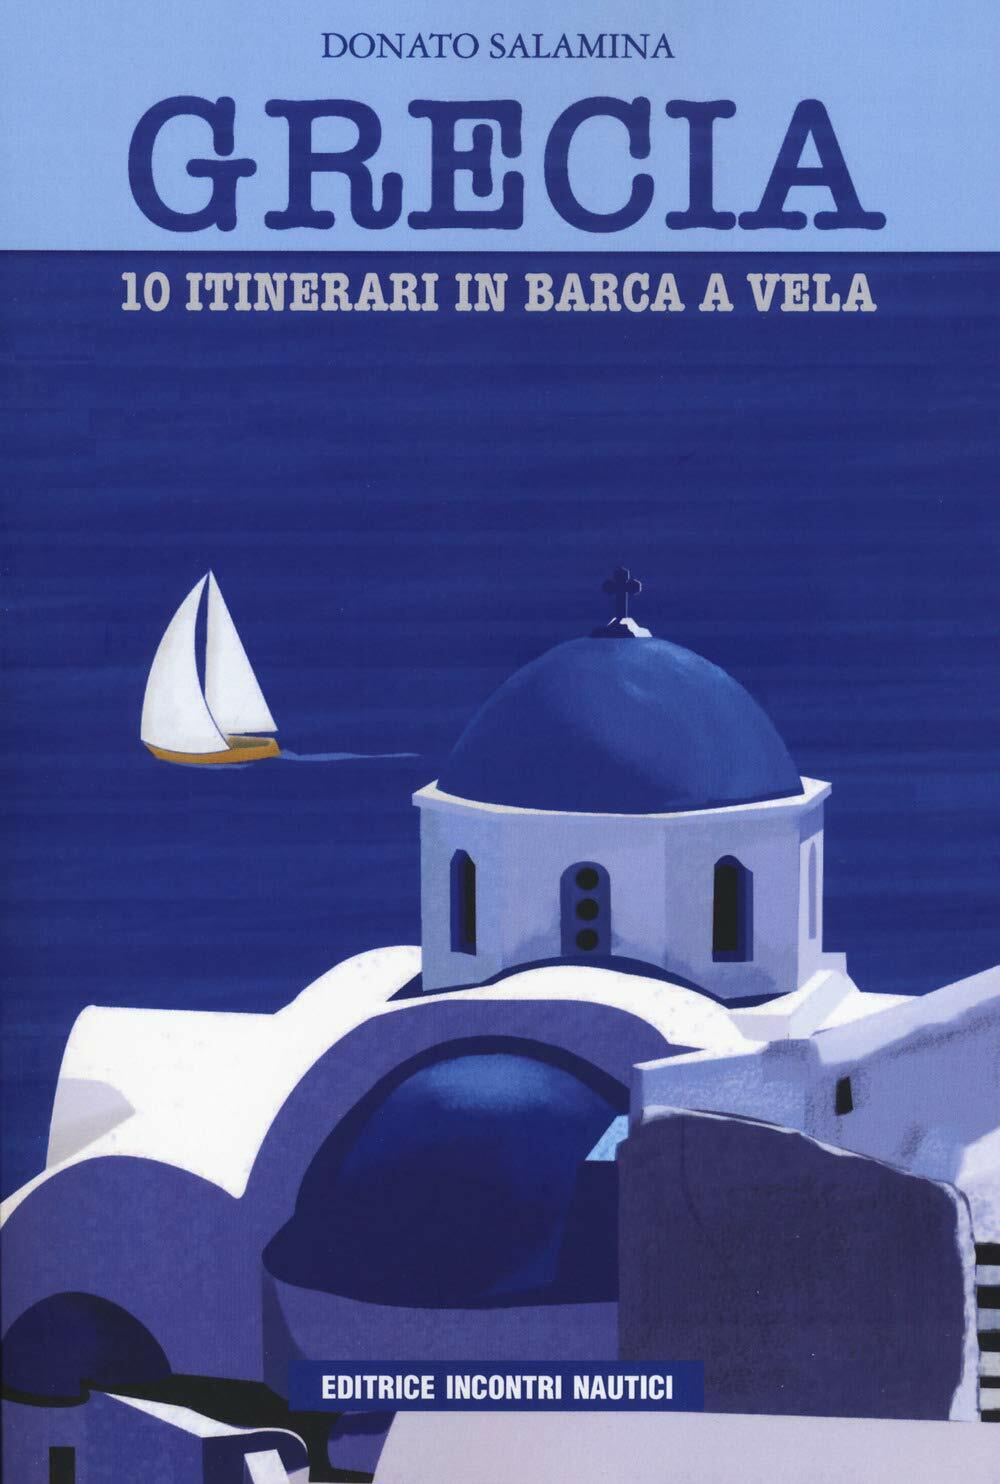 Grecia. 10 itinerari in barca a vela - Donato Salamina - Incontri nautici, 2020 libro usato